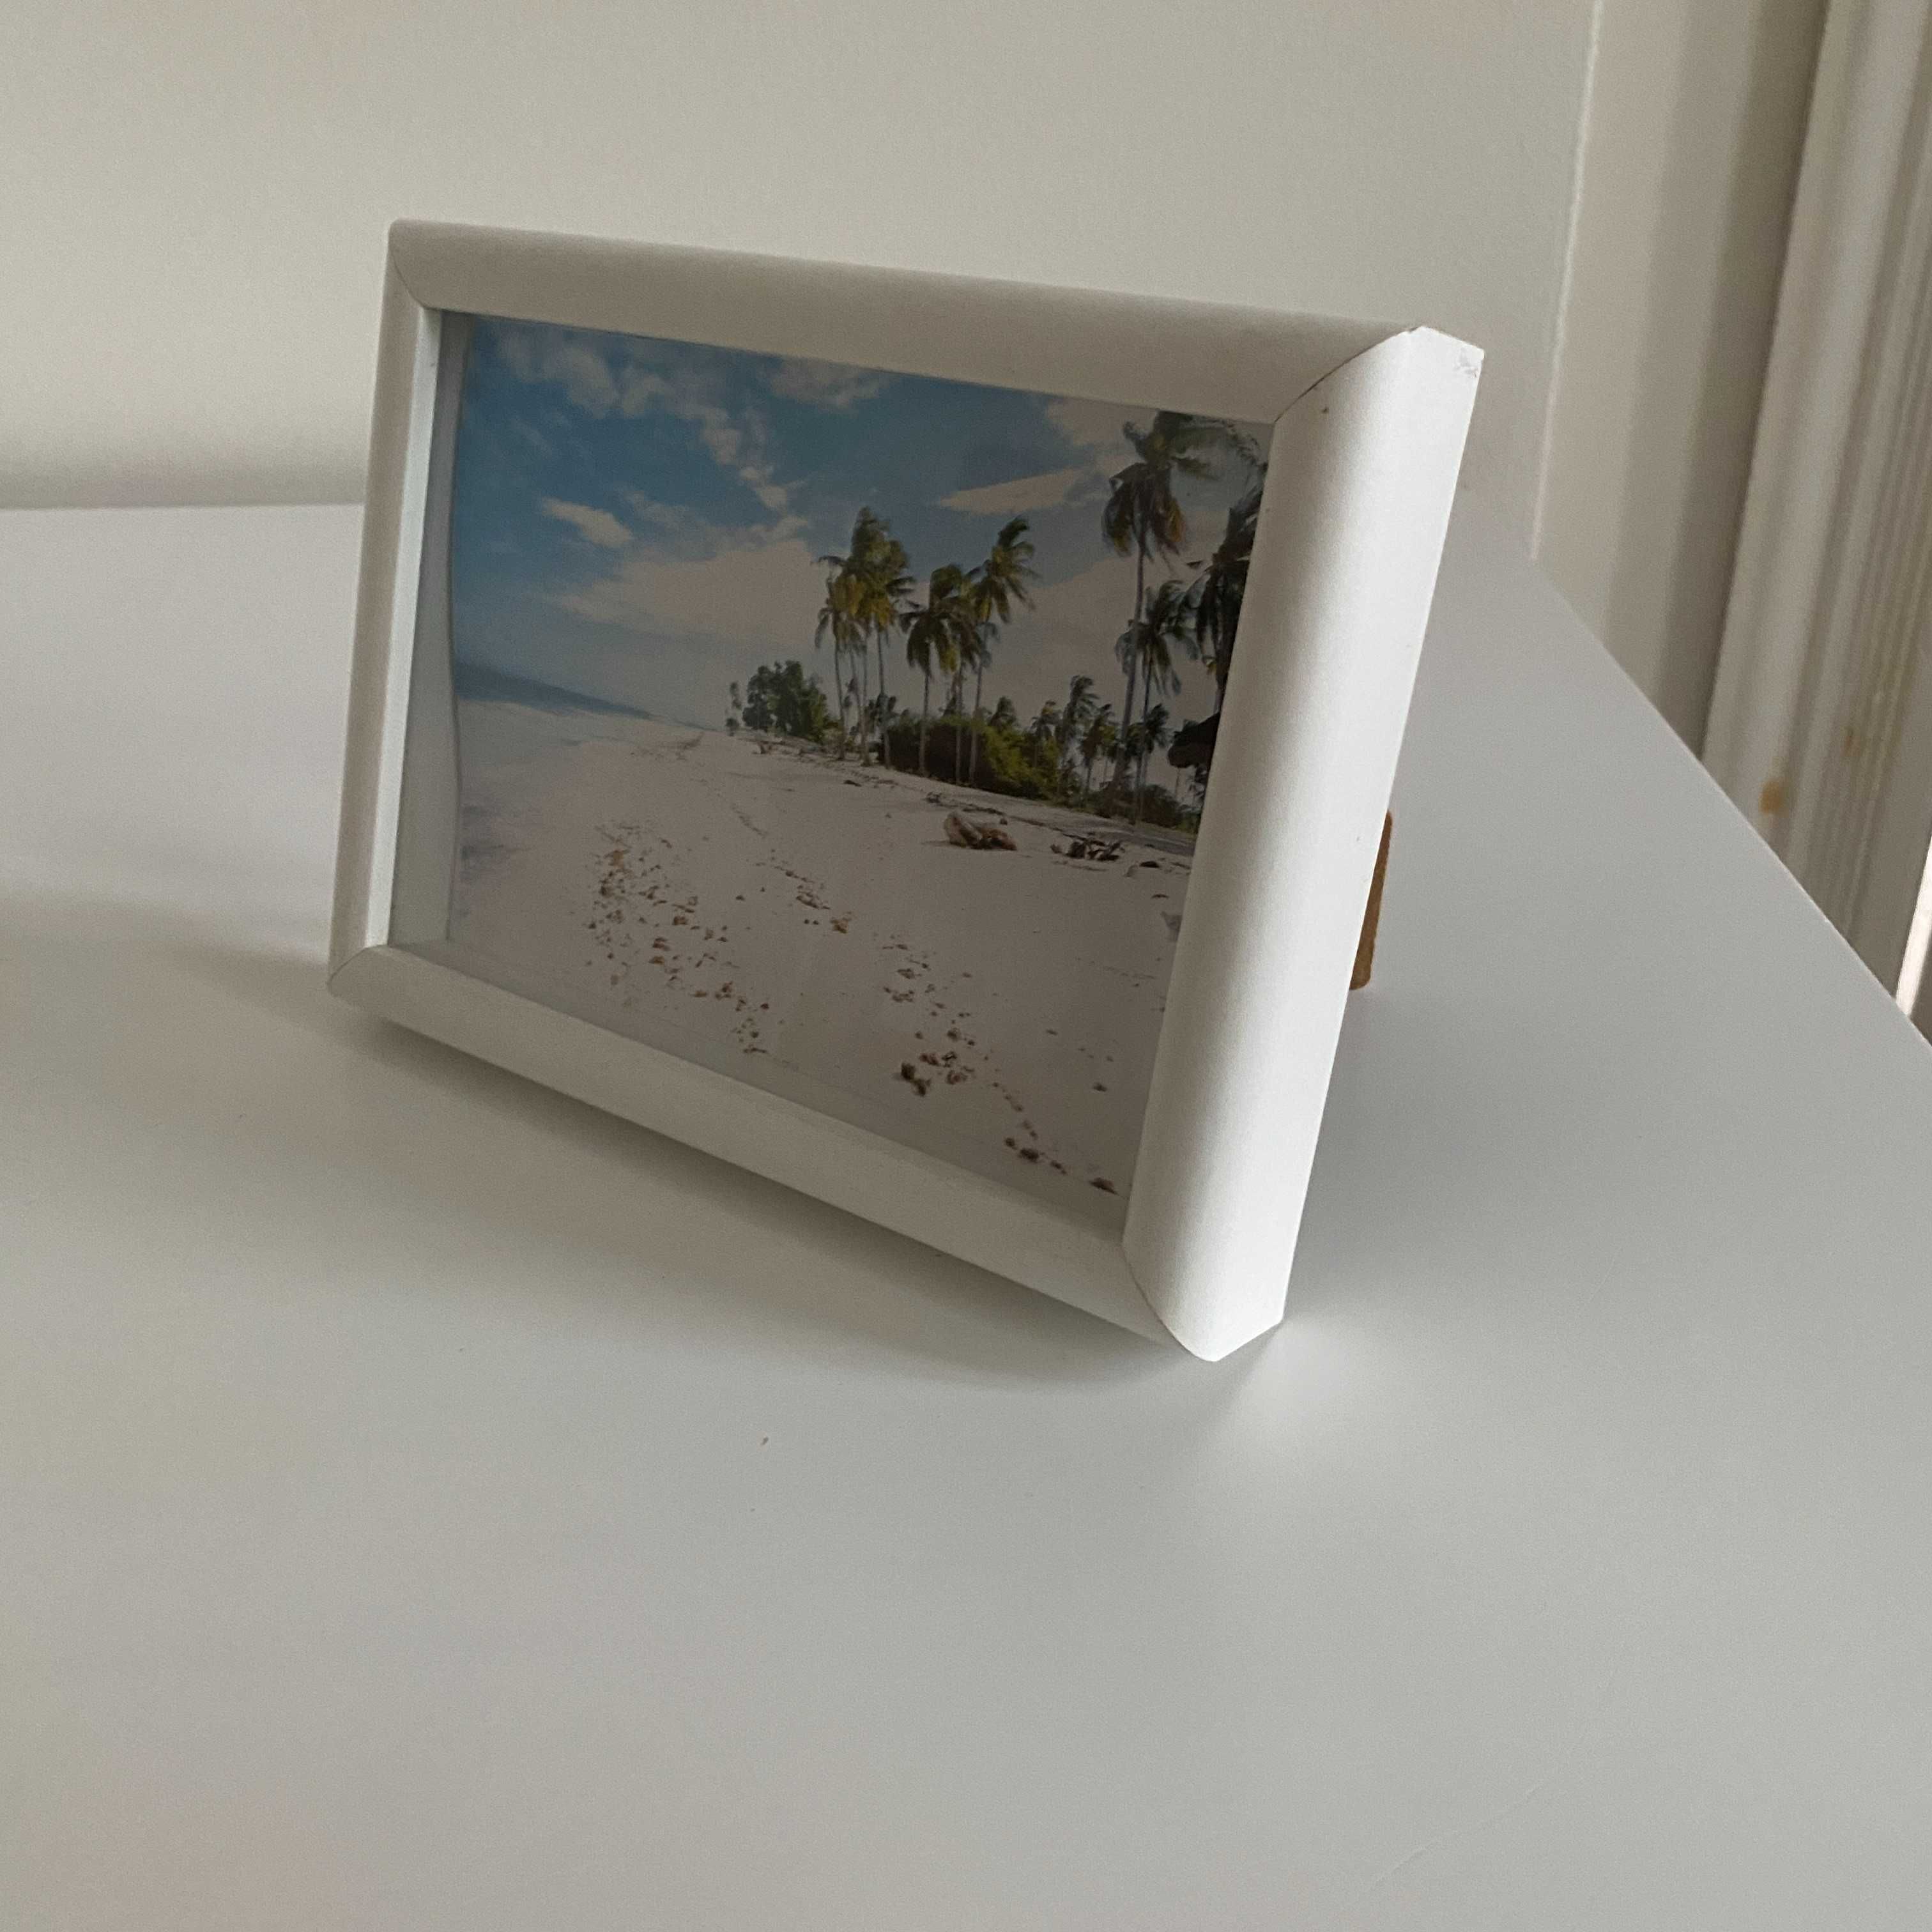 Biała ramka do zdjęć rama rajska plaża 13x18